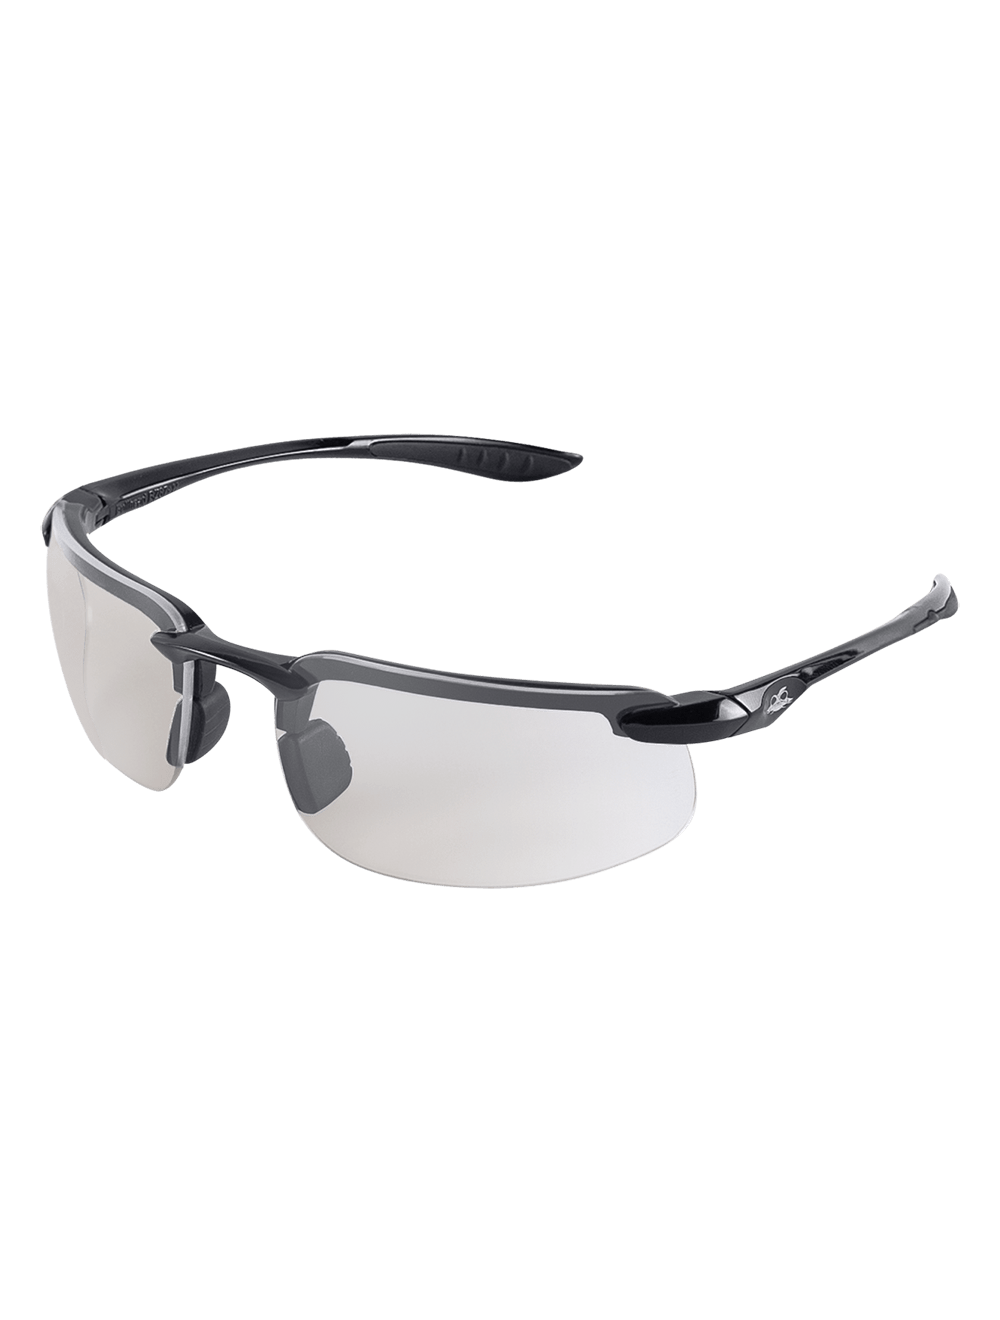 Swordfish®X Indoor/Outdoor Anti-Fog Lens, Shiny Black Frame Safety Glasses - LIMITED STOCK - BH2556AF